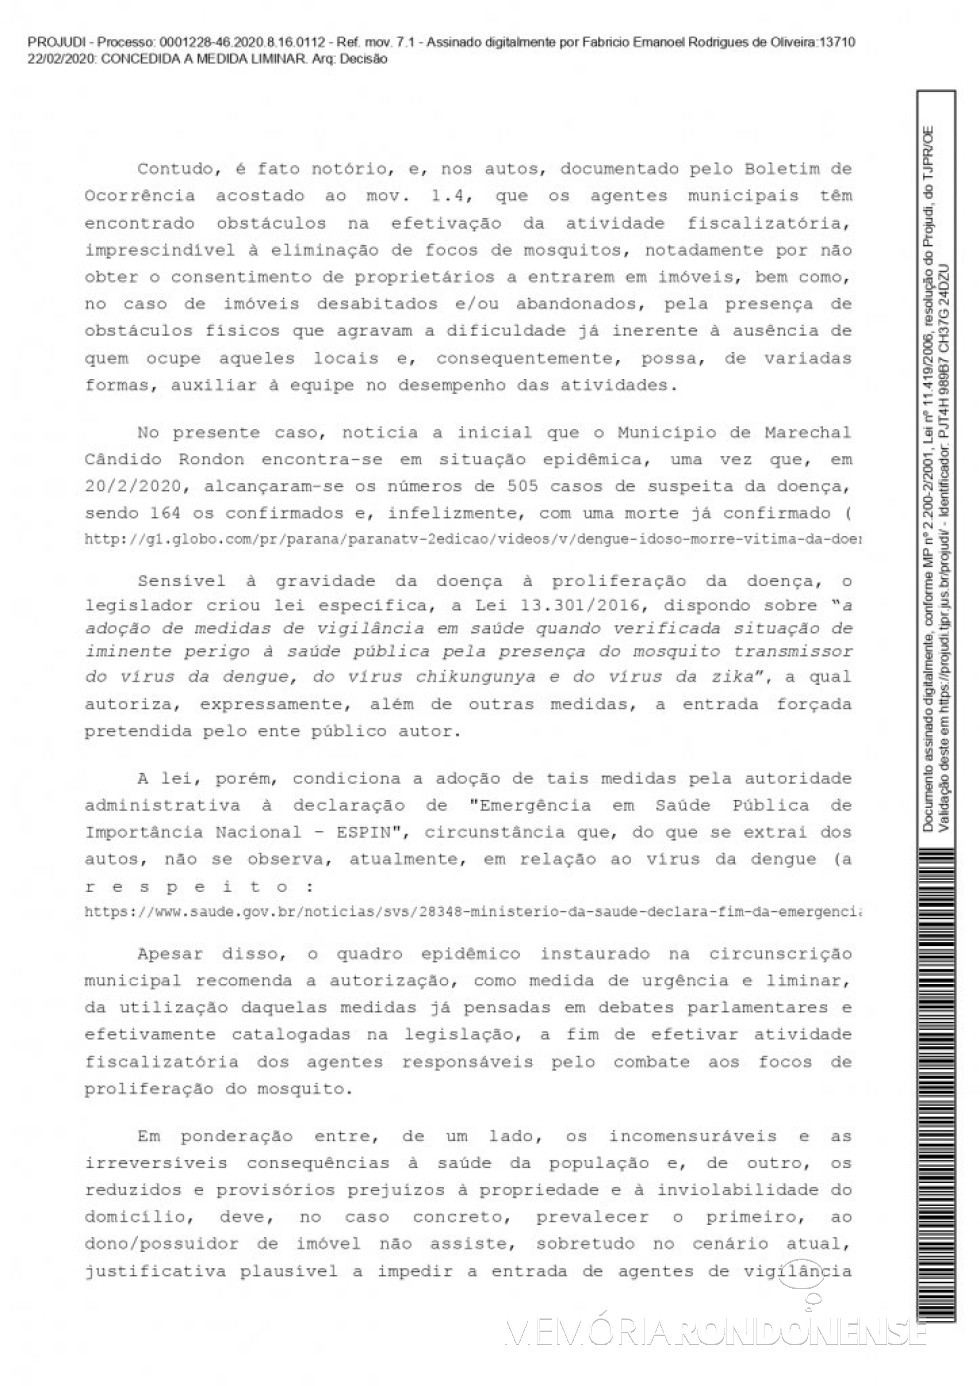 || Página 2 da liminar concedida pelo juiz de direito substituto Fabrício Emanoel Rodrigues de Oliveira em favor do município de Marechal Cândido Rondon, em fevereiro de 2020.
Imagem: Acervo Projeto Memória Rondonense - FOTO 11 - 